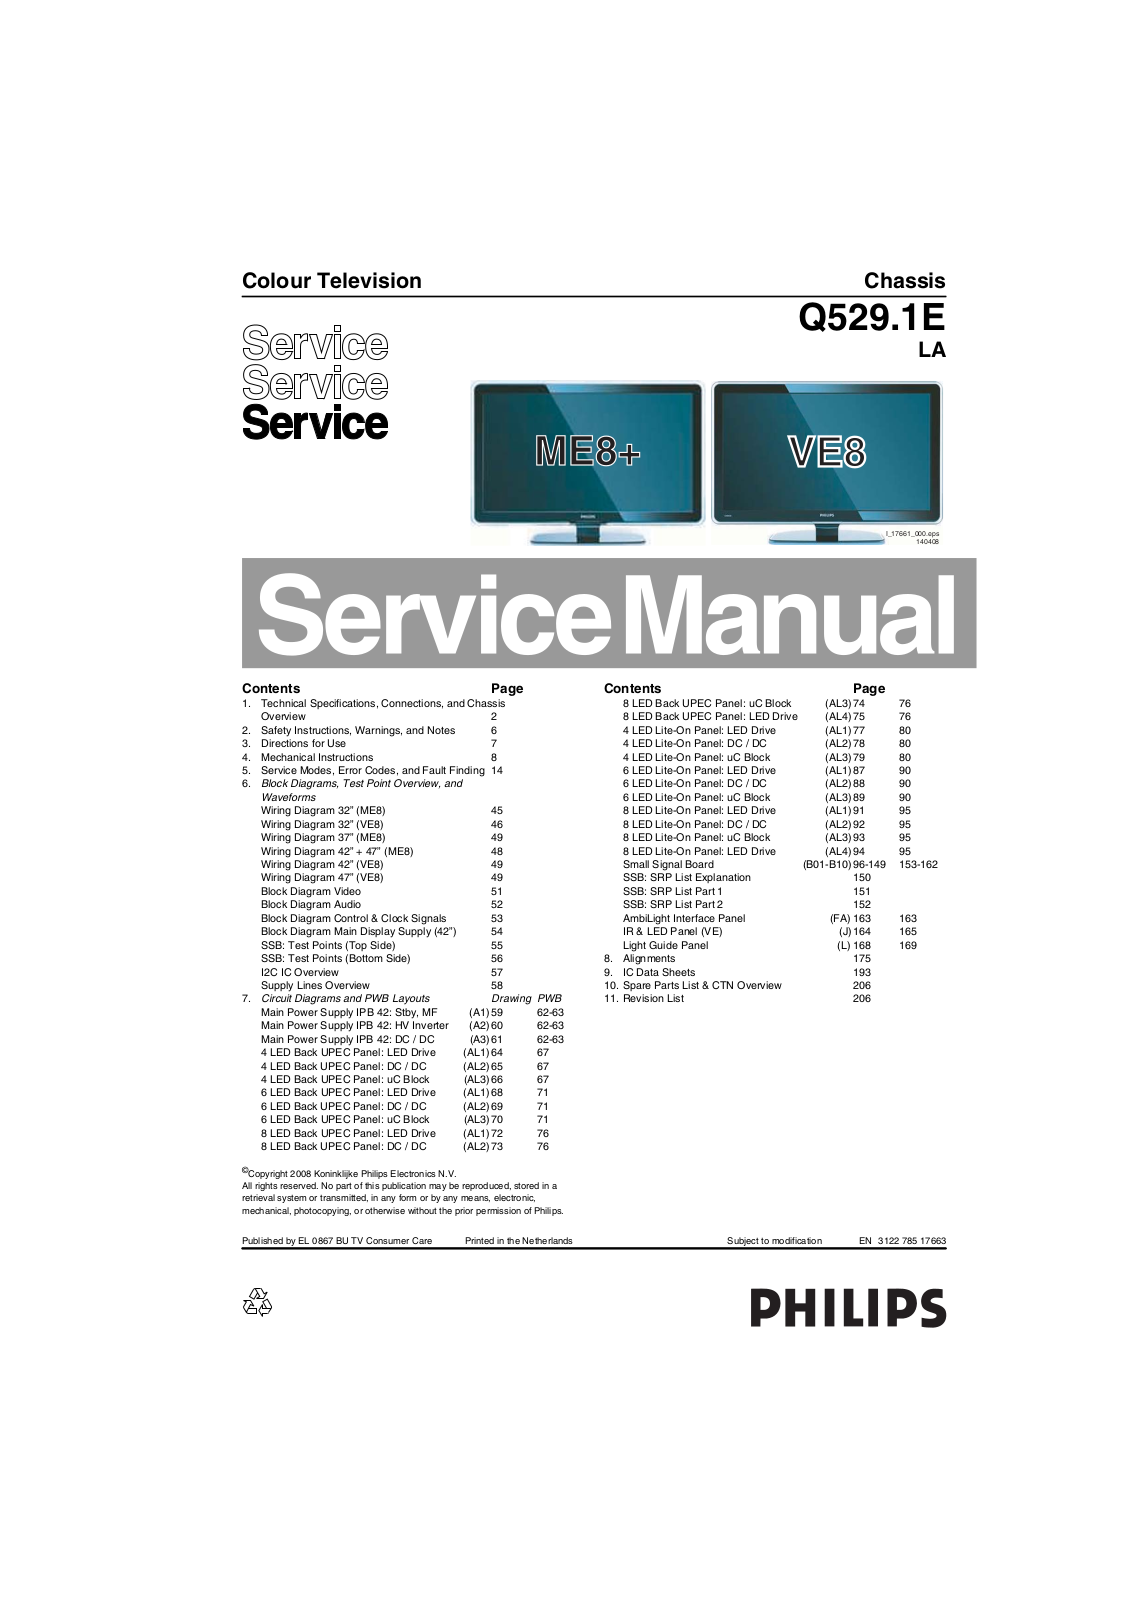 Philips Q529.1E-LA Service Manual